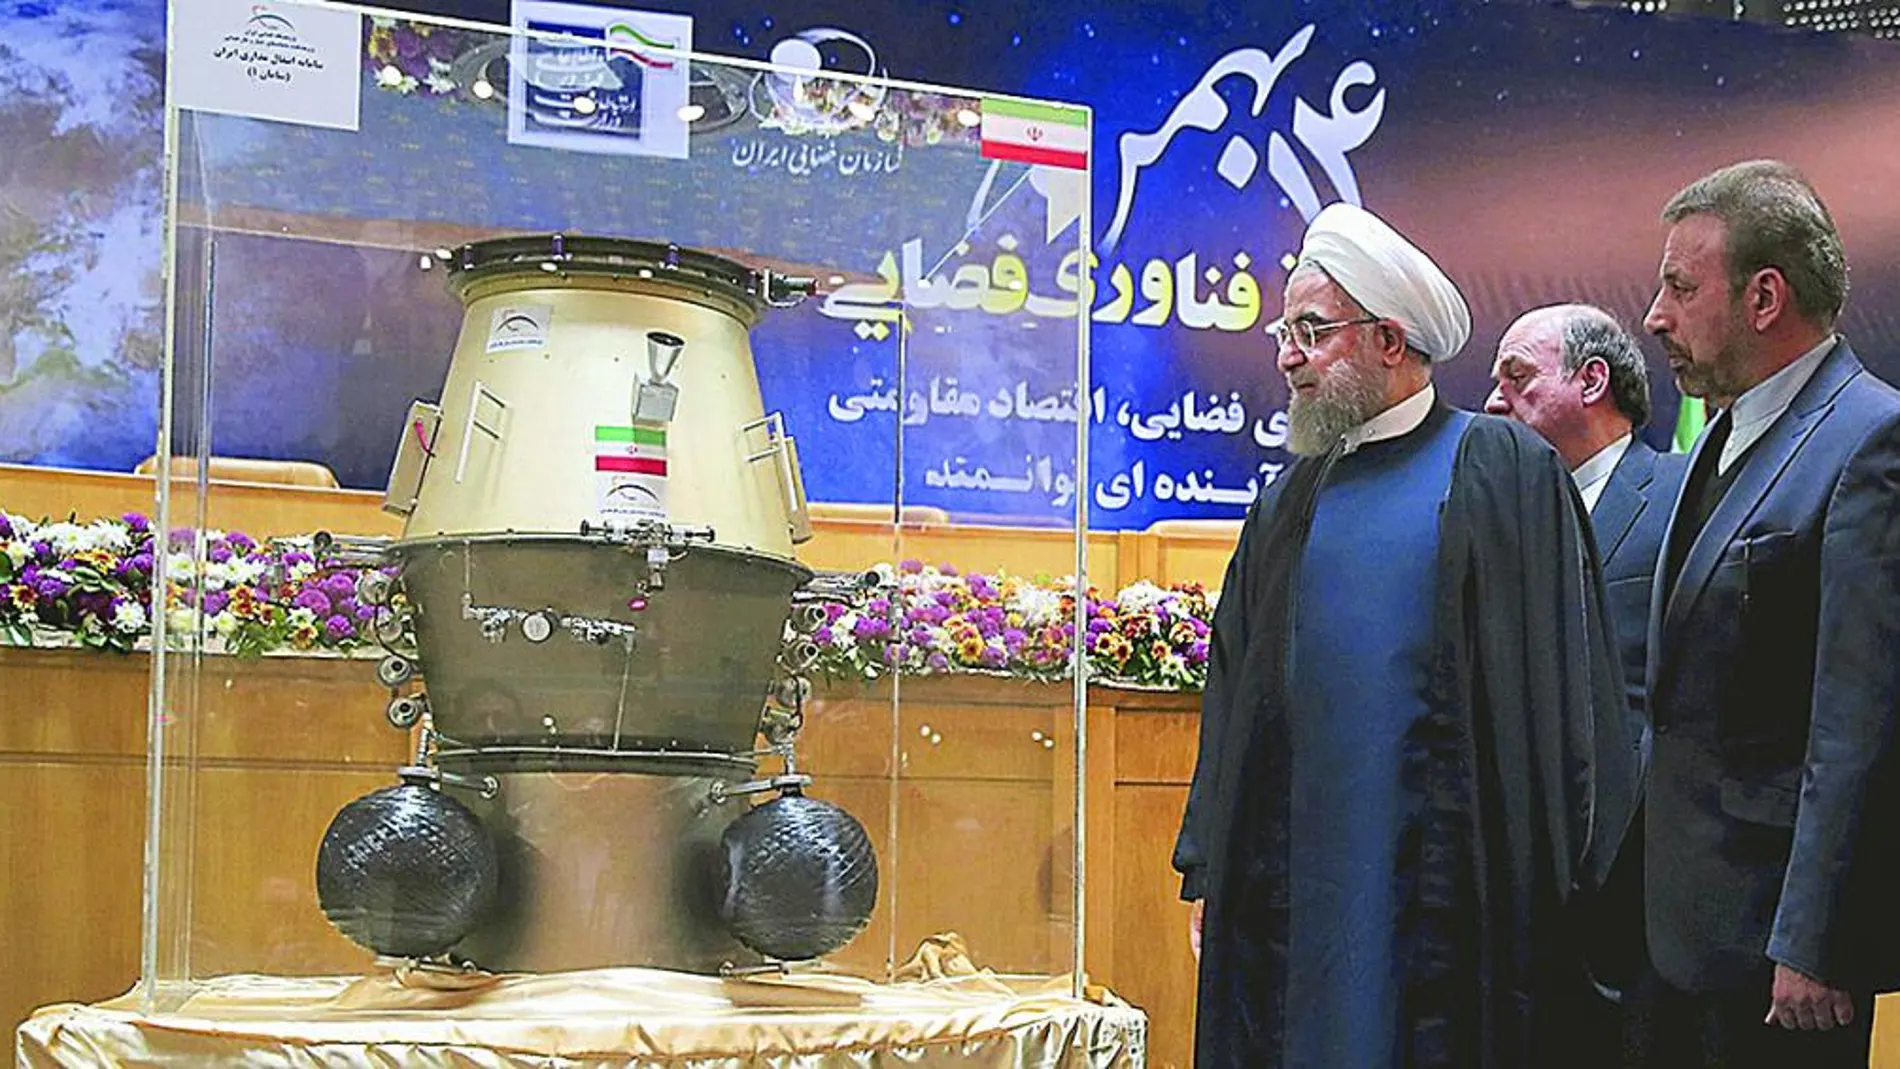 El presidente Hasan Rohani visita, ayer en Teherán, una exposición sobre la tecnología espacial iraní